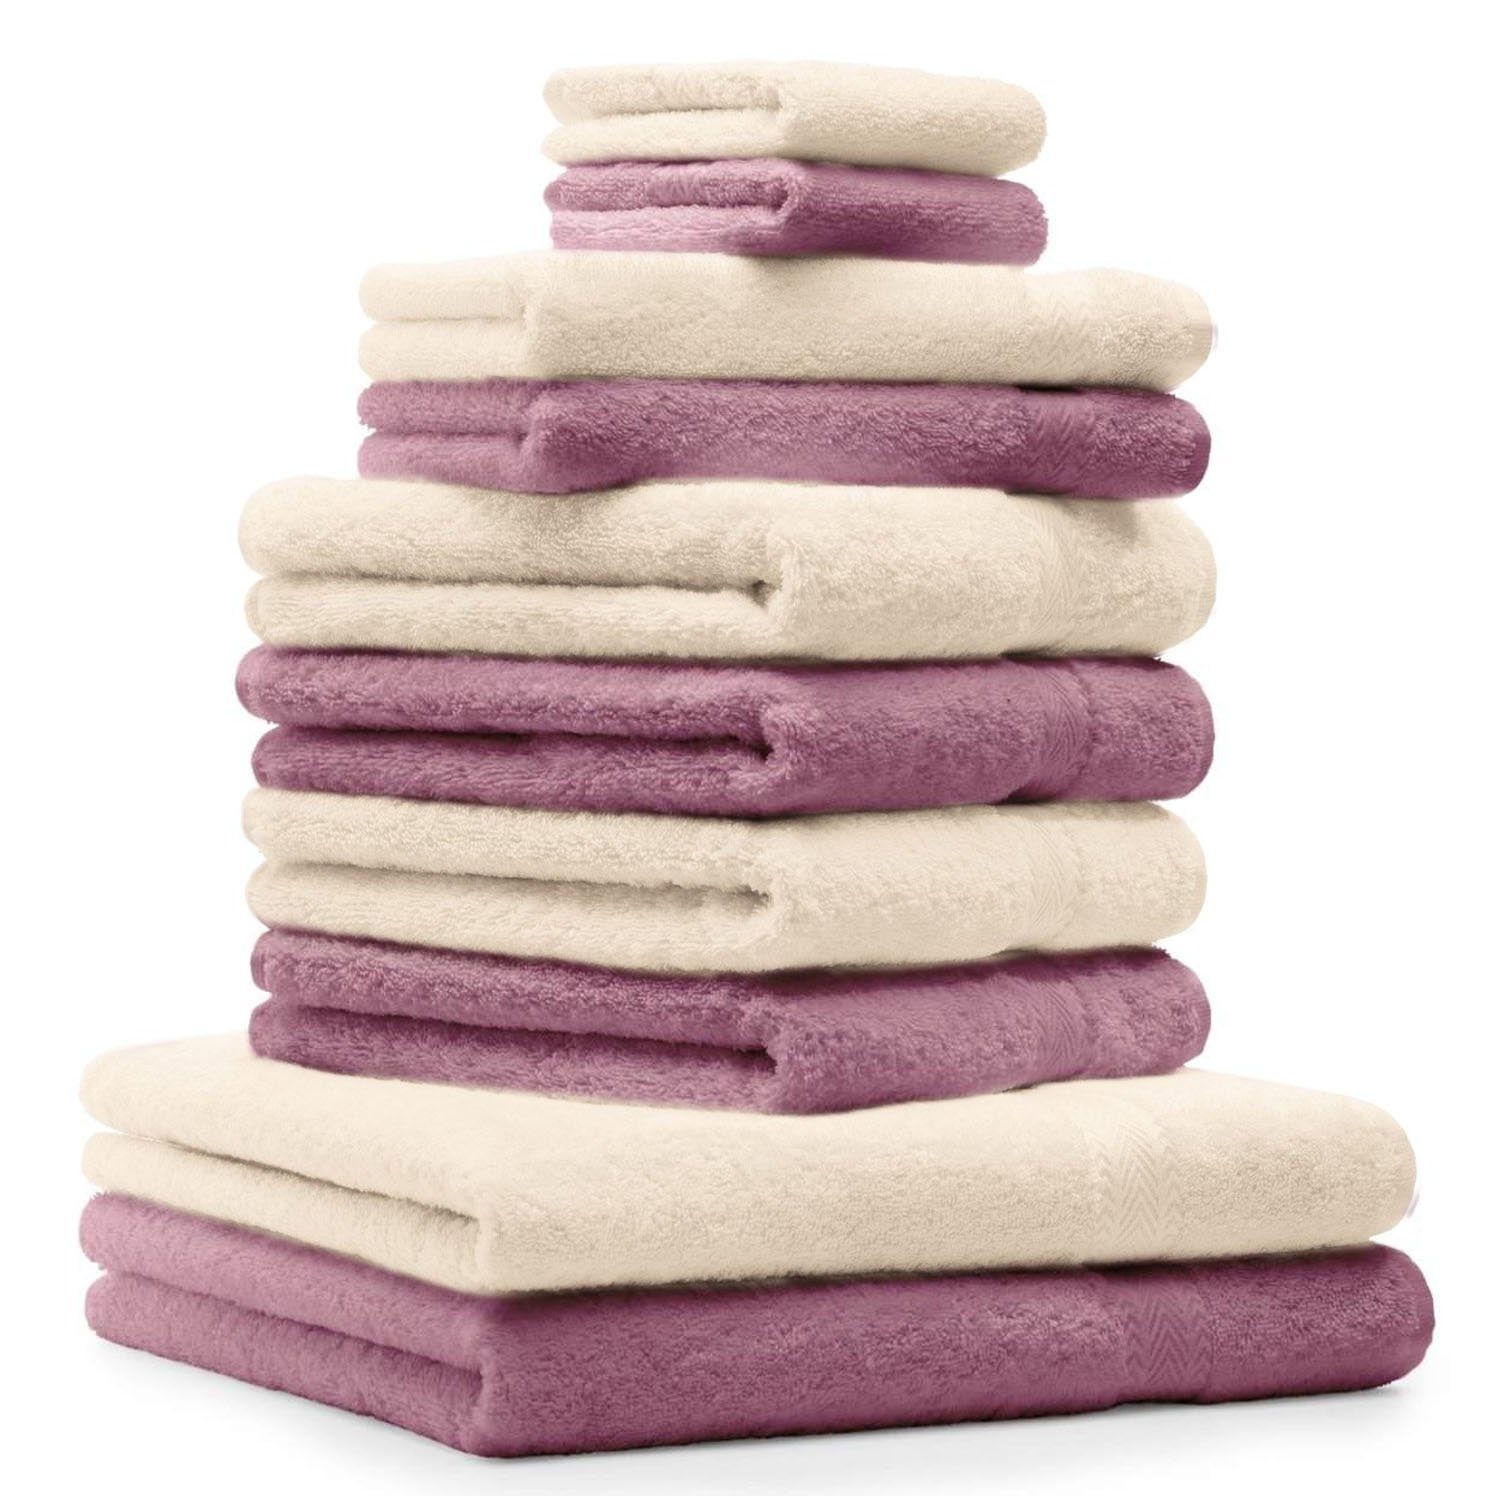 Betz Handtuch Set 10-TLG. Handtuch-Set Classic Farbe altrosa und beige, 100% Baumwolle